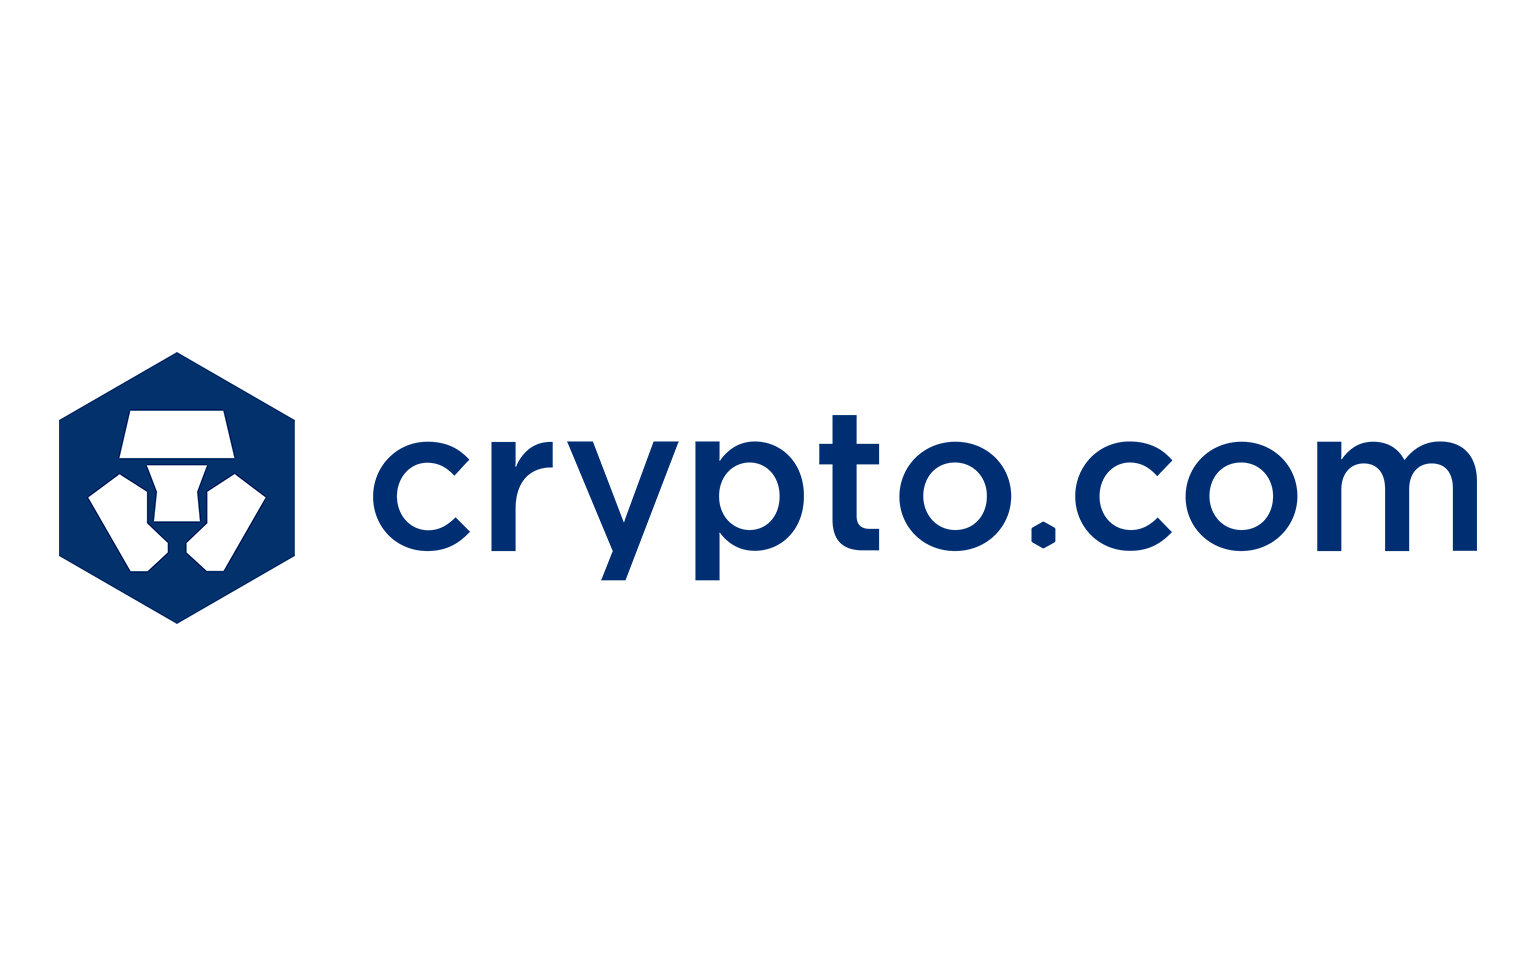 มาดูกันว่า Crypto.com คืออะไร? เหรียญ CRO ใช้ทำอะไรบ้าง?